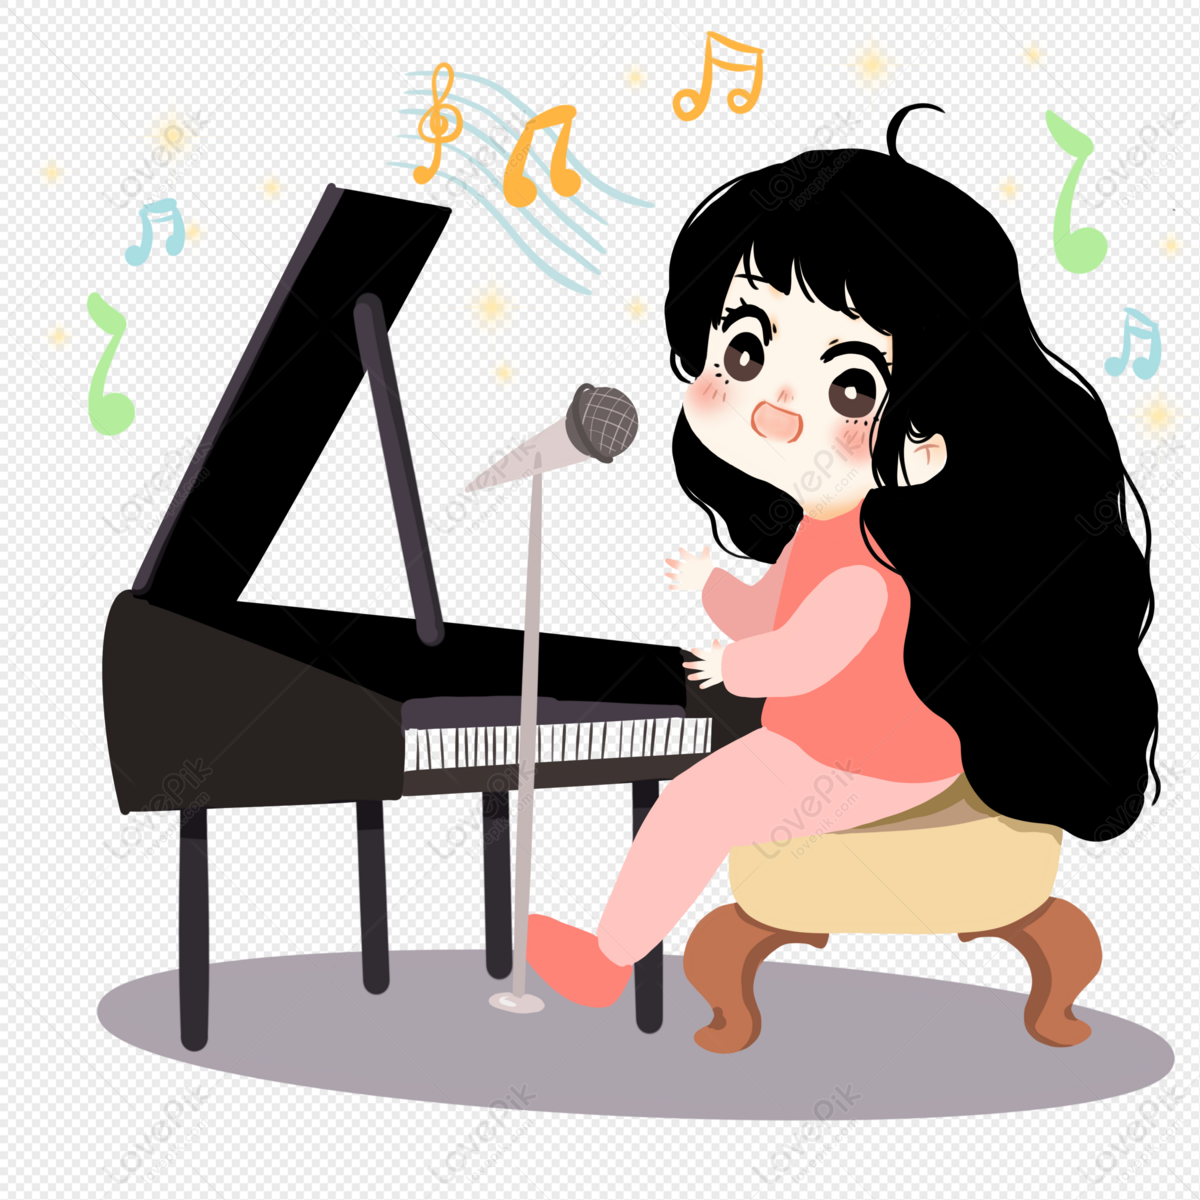 Игра поющая девочка. Фортепиано мультяшная. Девочка играет на фортепиано рисунок. Иллюстрация с пианино девочка. Девочка играет на пианино мультяшки.